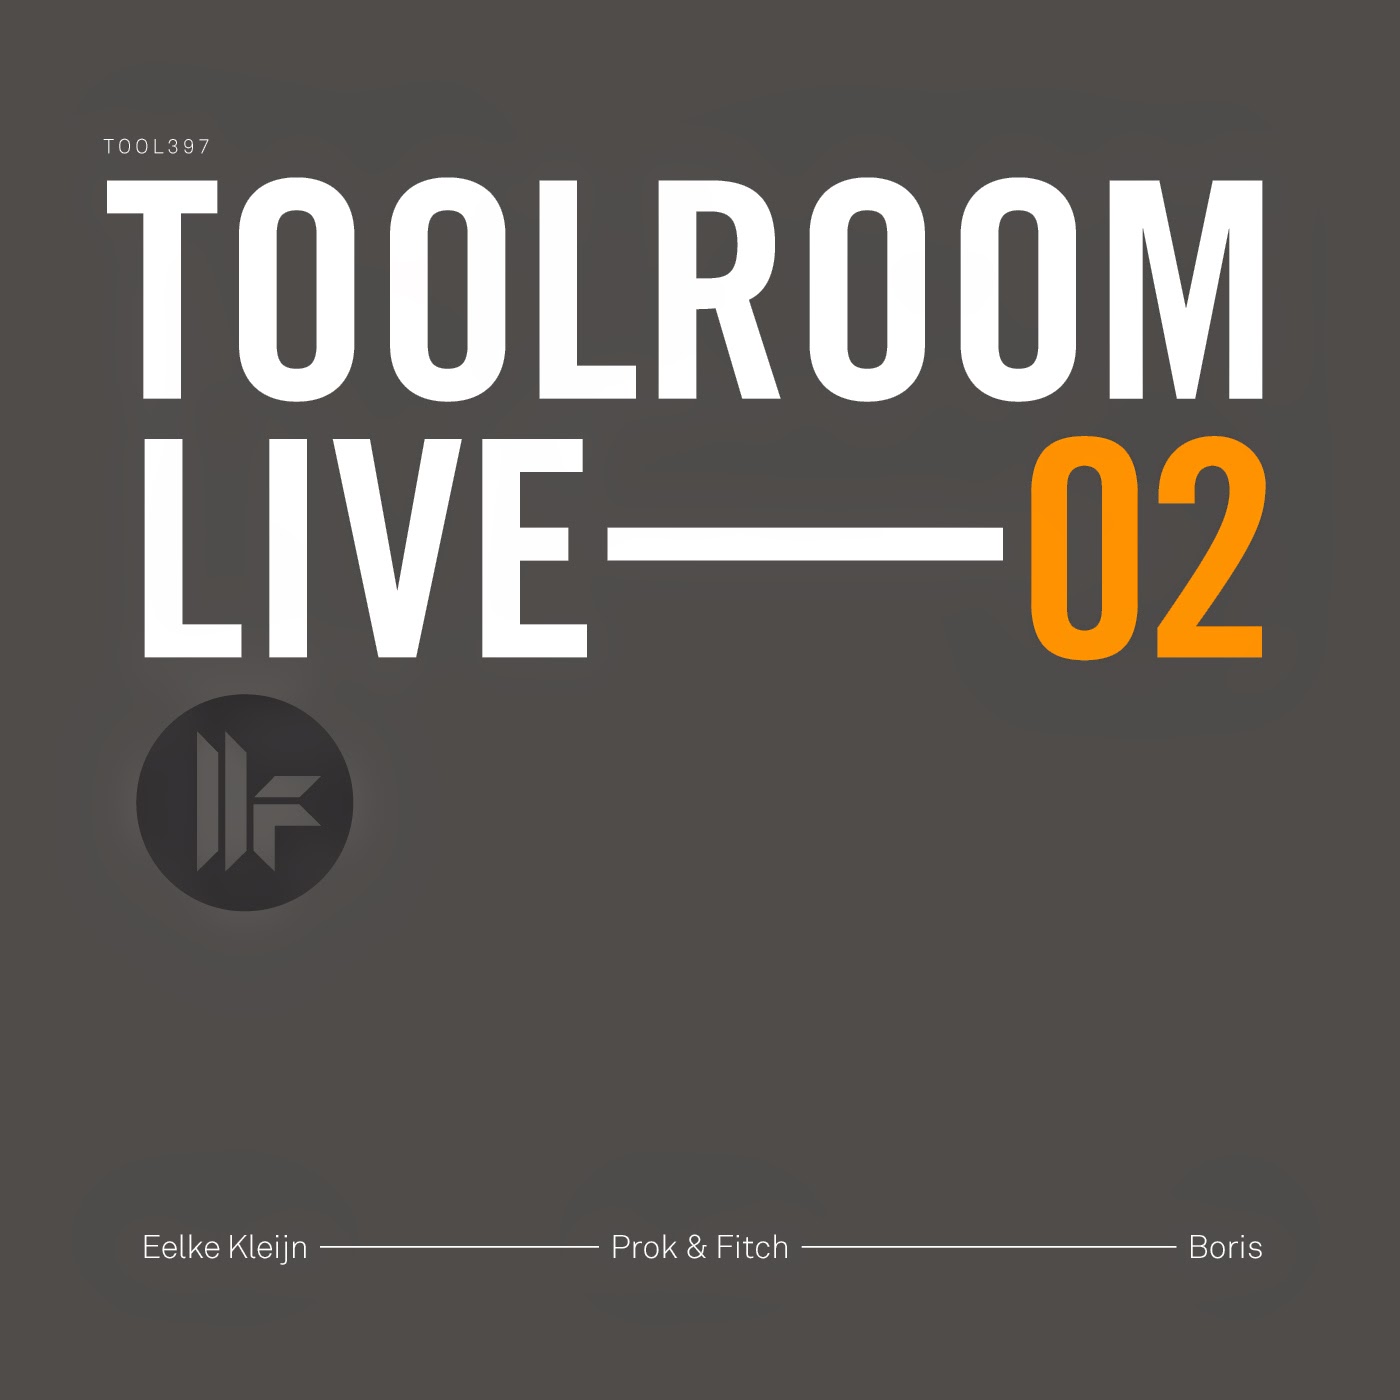 ‘TOOLROOM LIVE 02’ MIXED BY EELKE KLEIJN, PROK & FITCH & BORIS